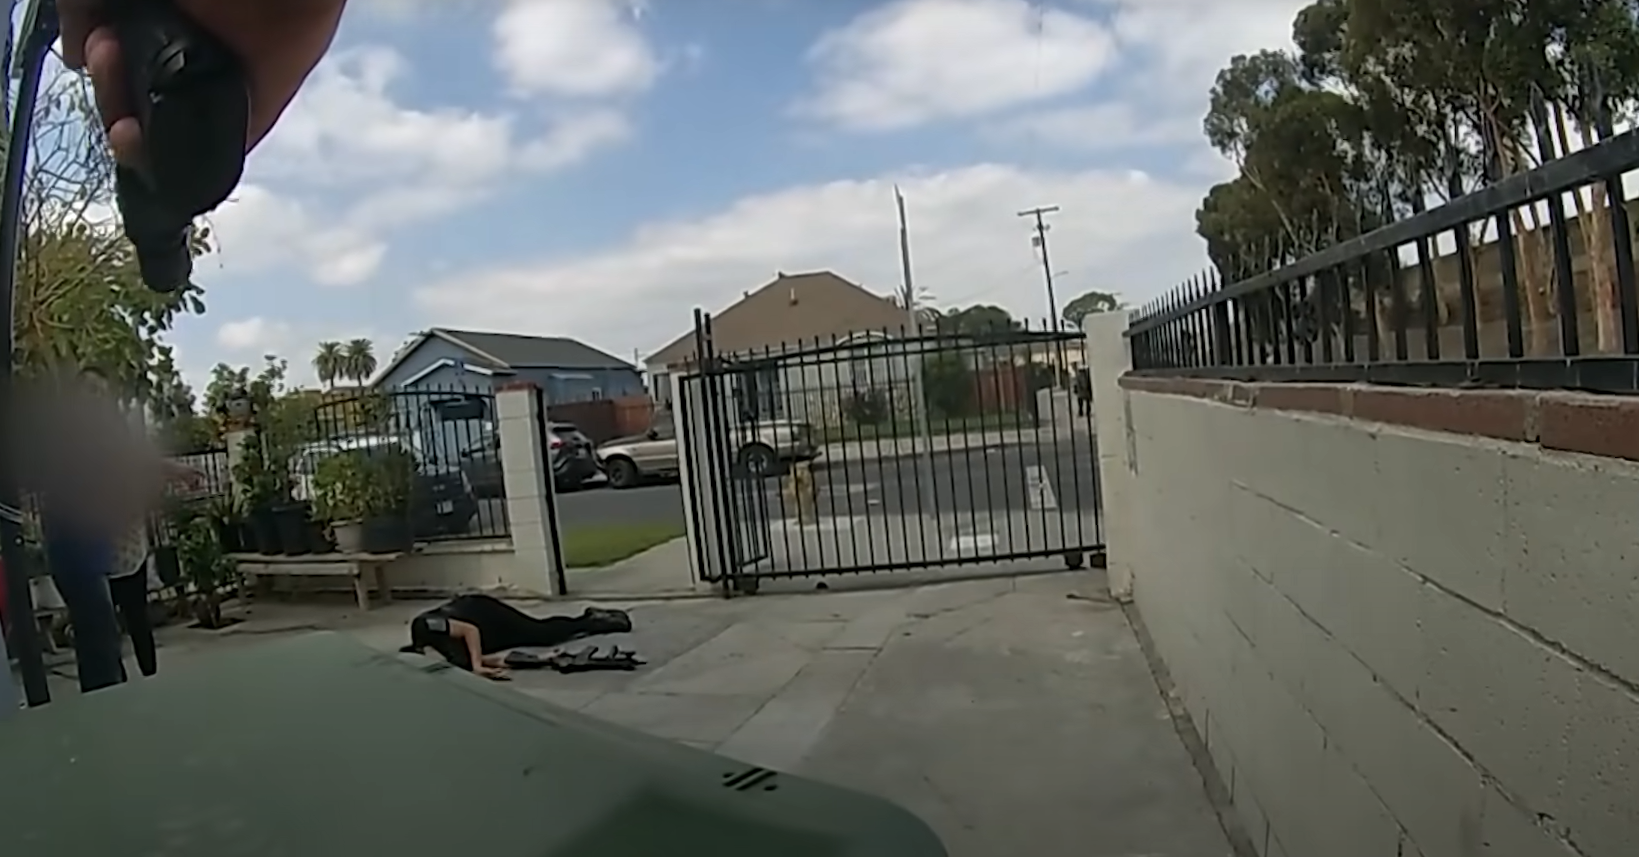 [VÍDEO IMAGENES FUERTES] Policías abaten joven con arma de juguete: California